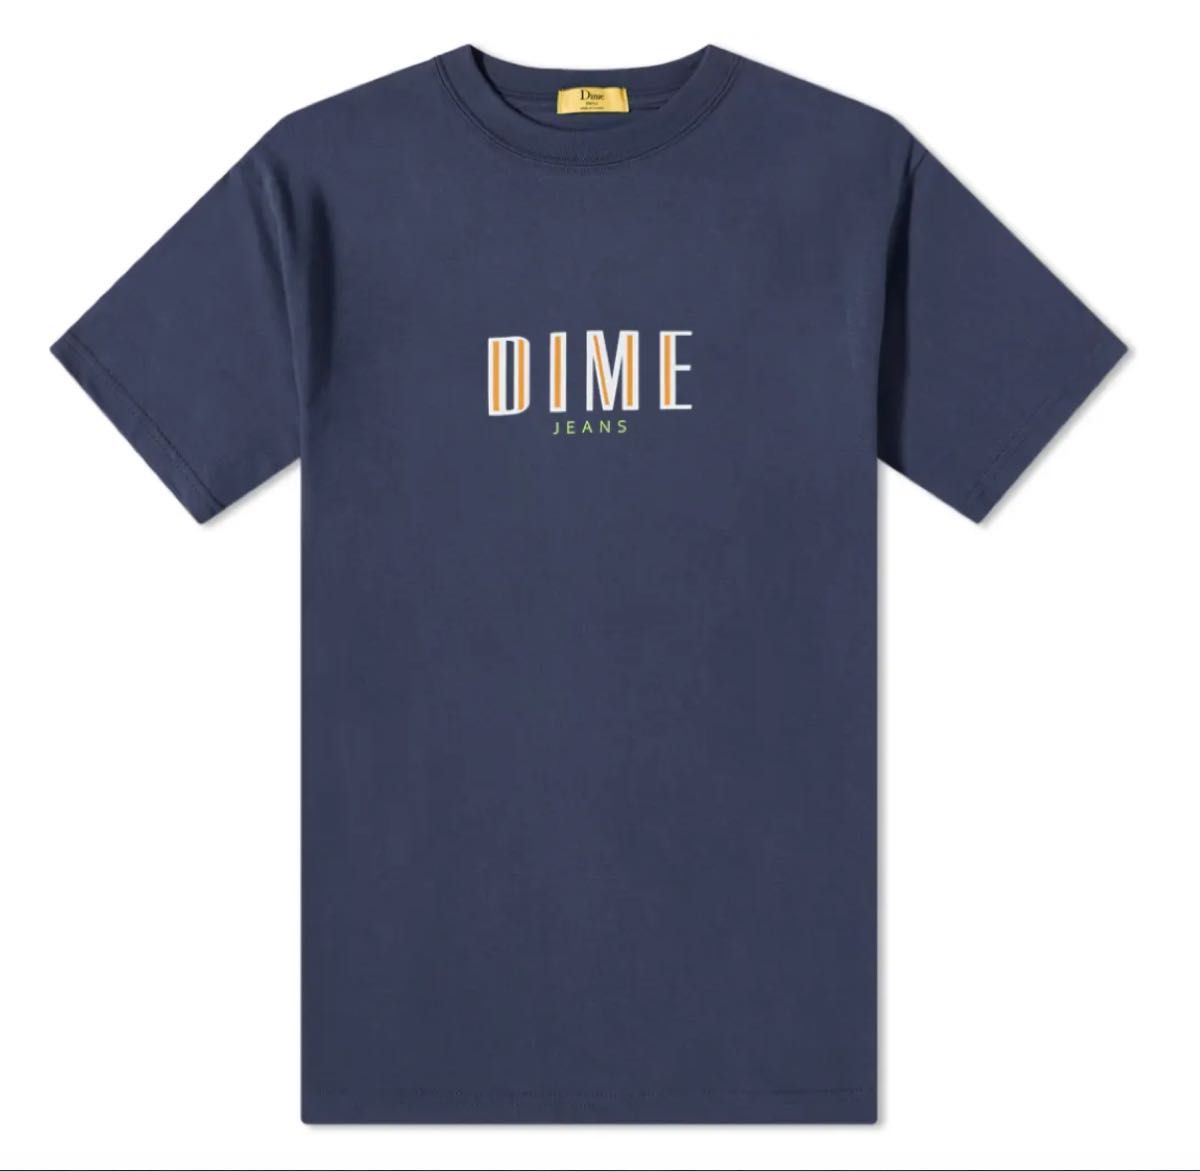 新品 人気 ★ Dime ダイム DIME JEANS TEE  Tシャツ Tee Supreme